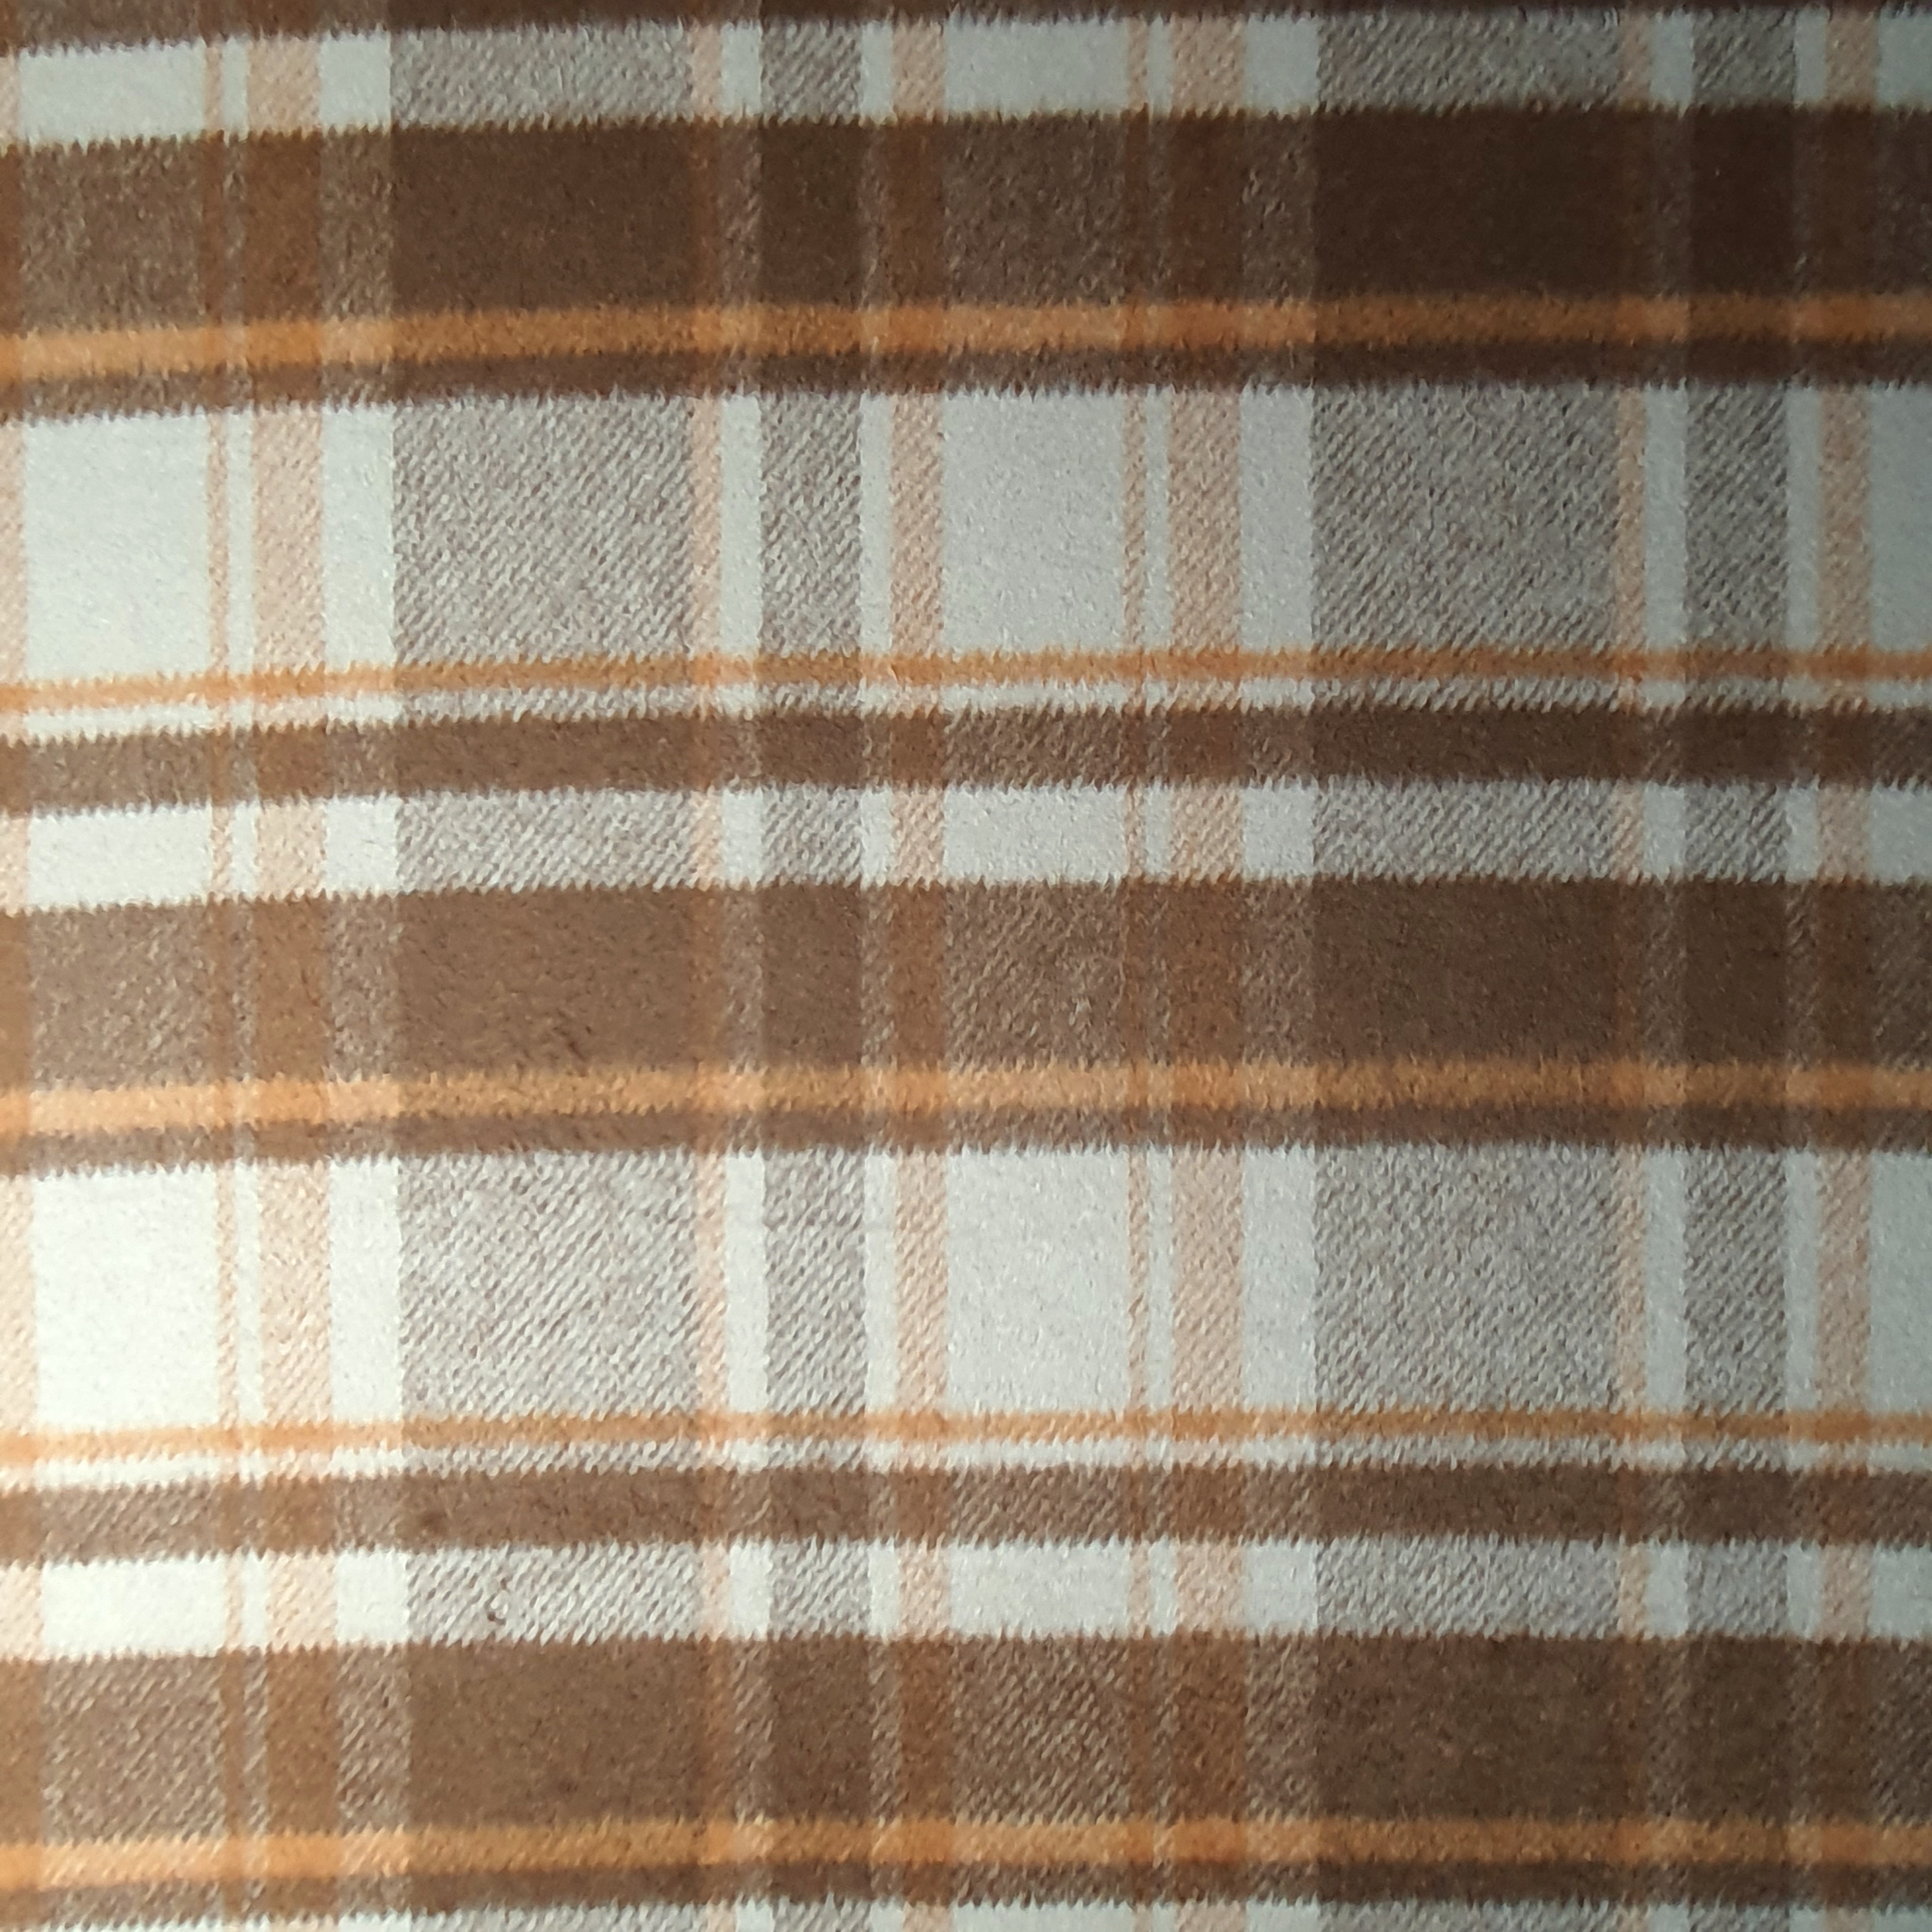 Tissu lainage manteau carreau écossais marron orange. (2)